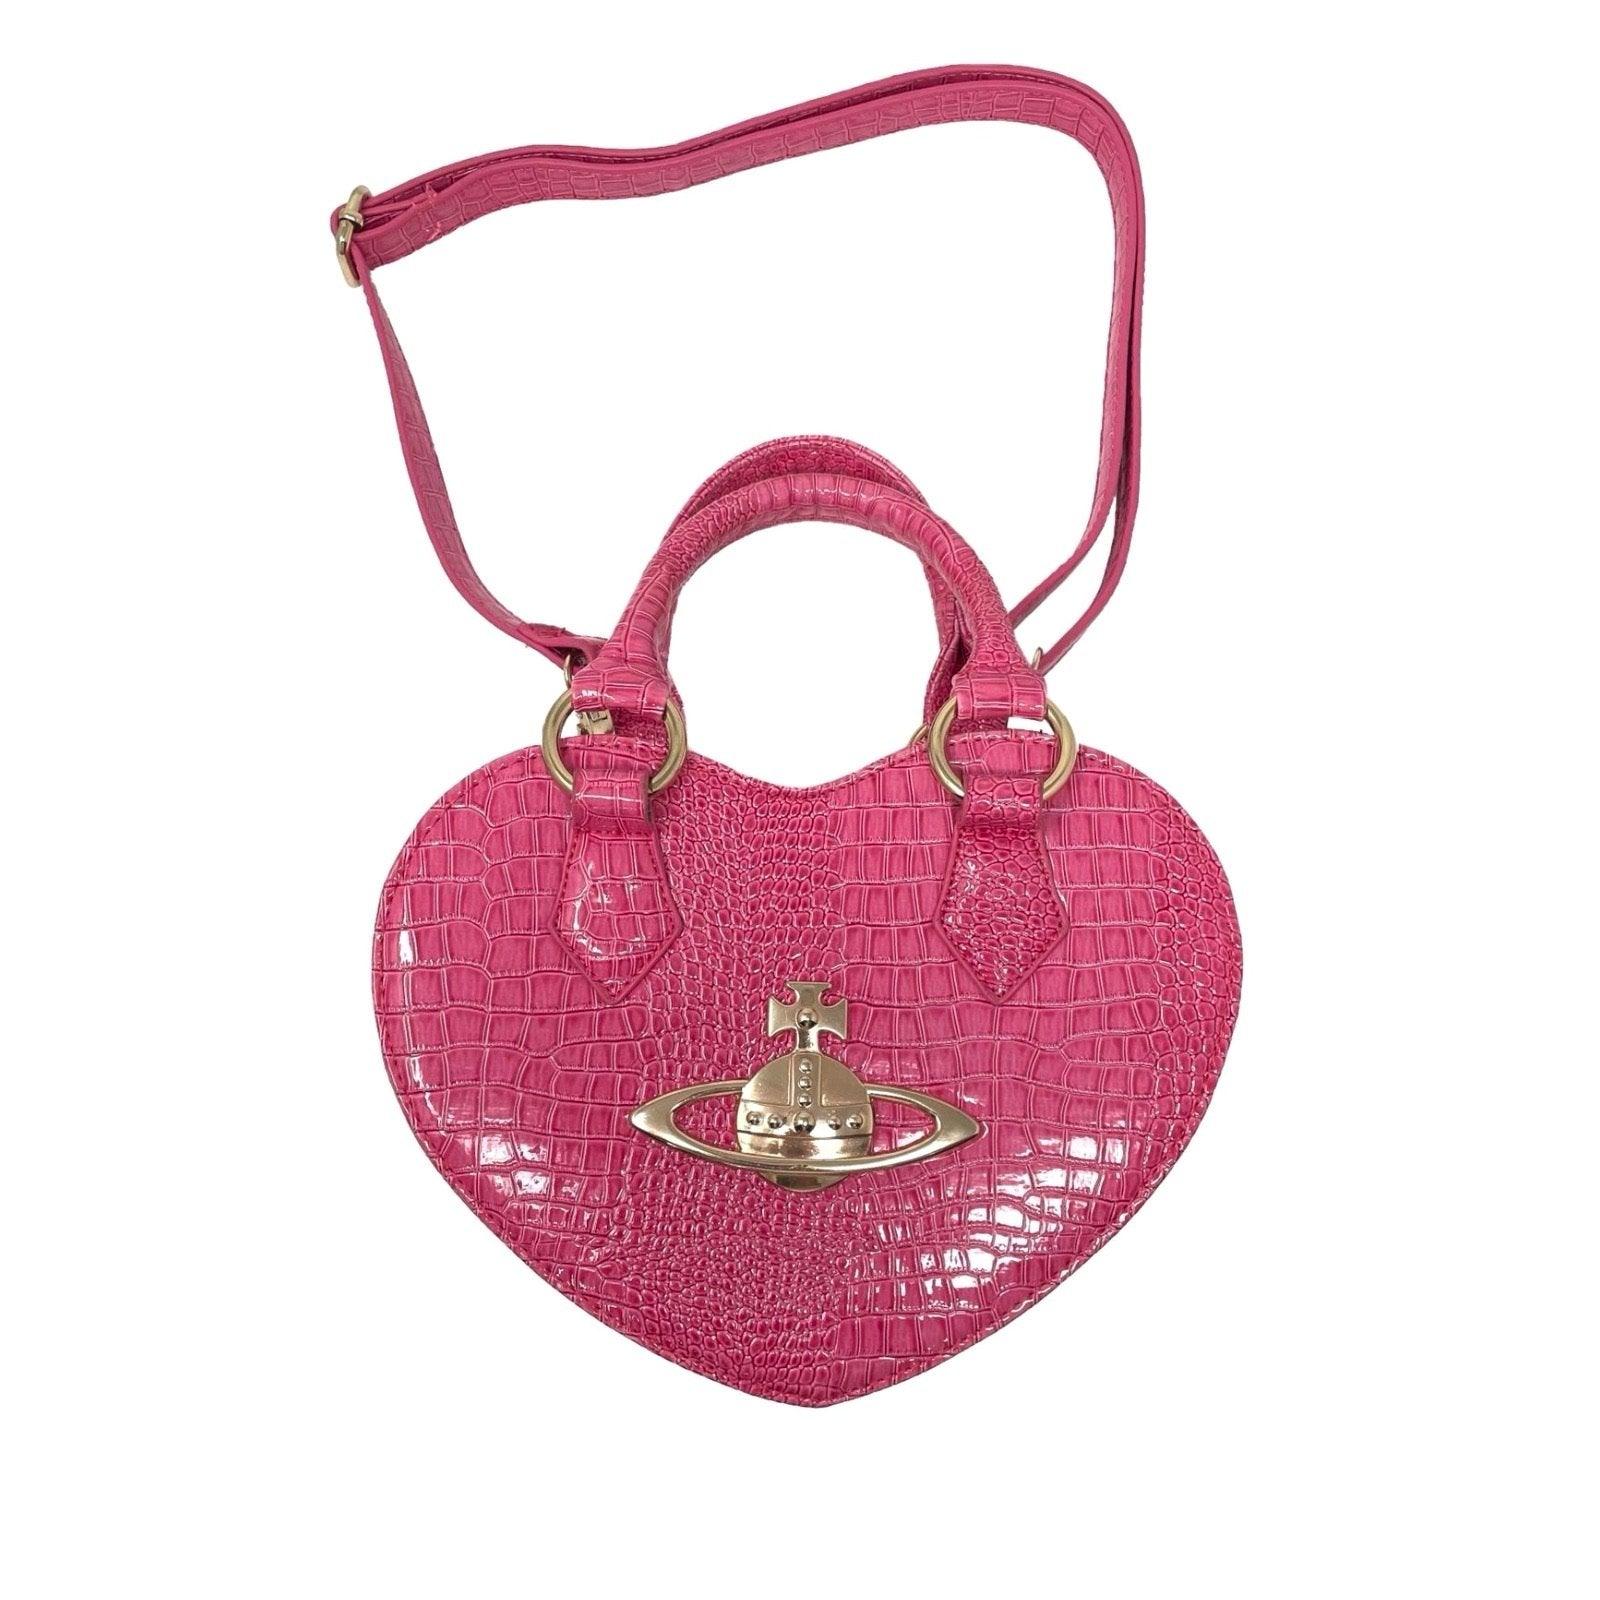 VIVIENNE WESTWOOD PASTEL PINK HEART BAG  Vivienne westwood bags, Heart  shaped bag, Heart bag